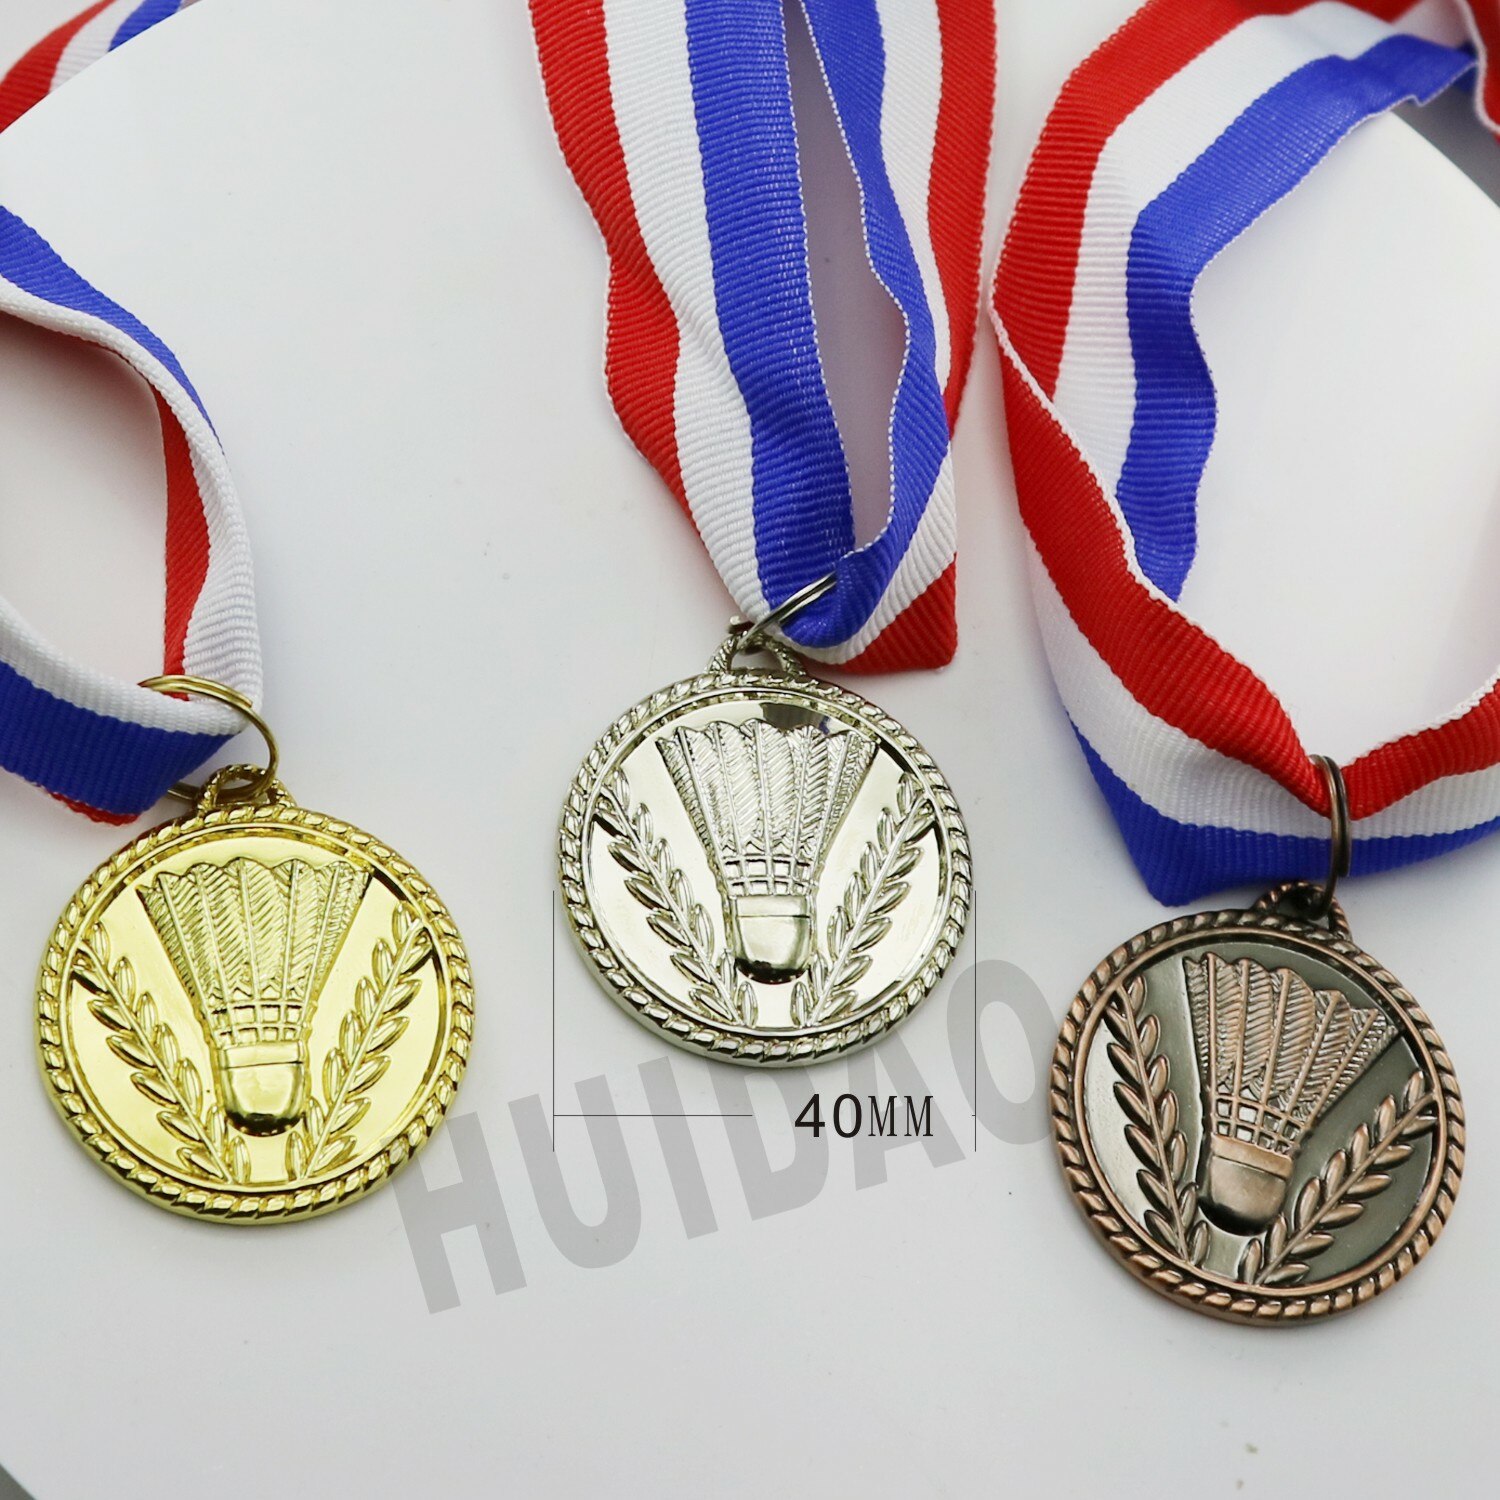 MAAT 40 MM Badminton Kleine Medaille 1 Set Bevatten 1 pcs Goud Kleur Medaille en 1 pcs Zilveren Gouden Medaille en 1 pcs Koperen Medaille